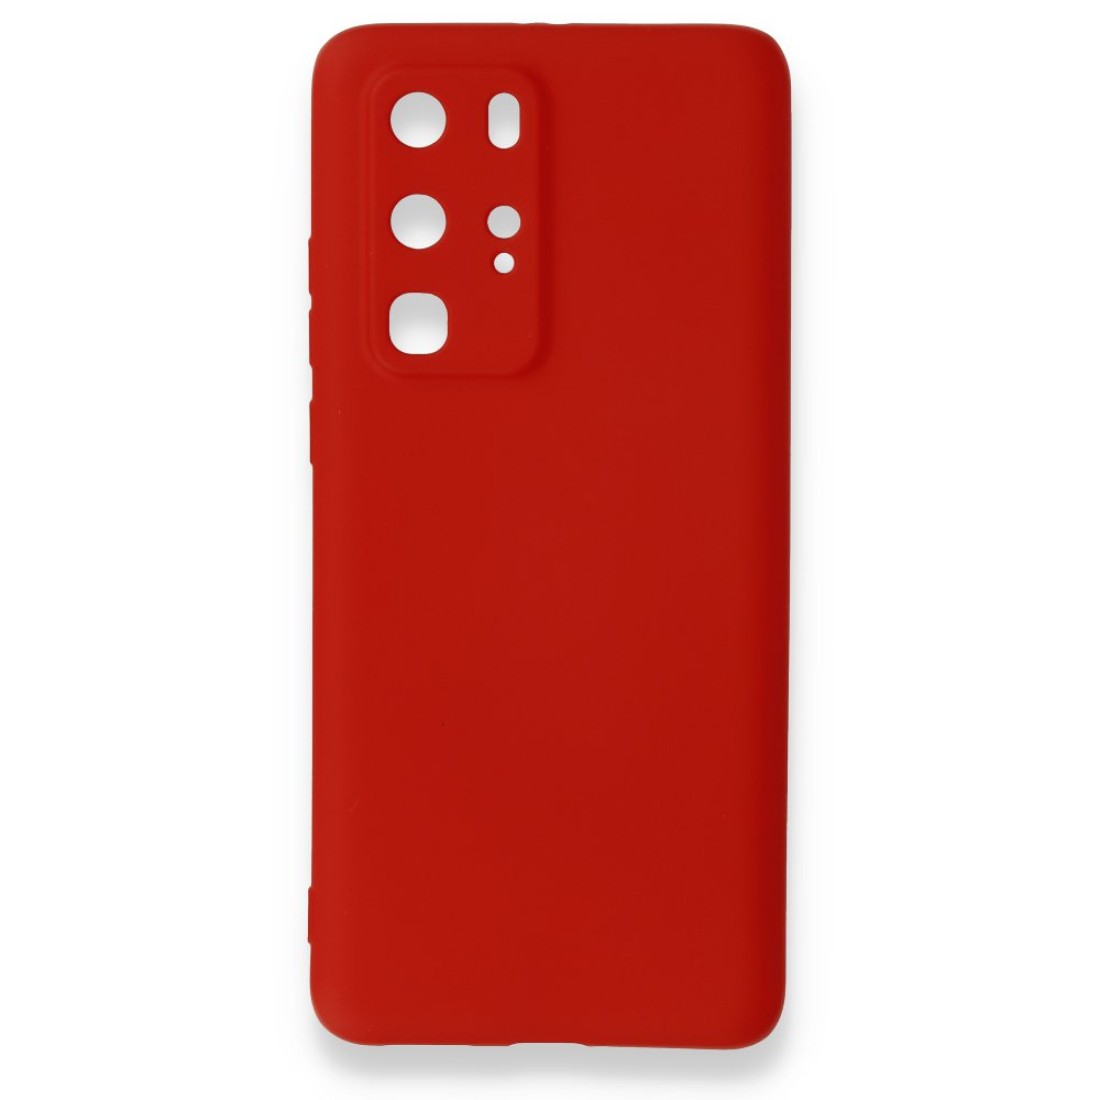 Huawei P40 Pro Kılıf Premium Rubber Silikon - Kırmızı